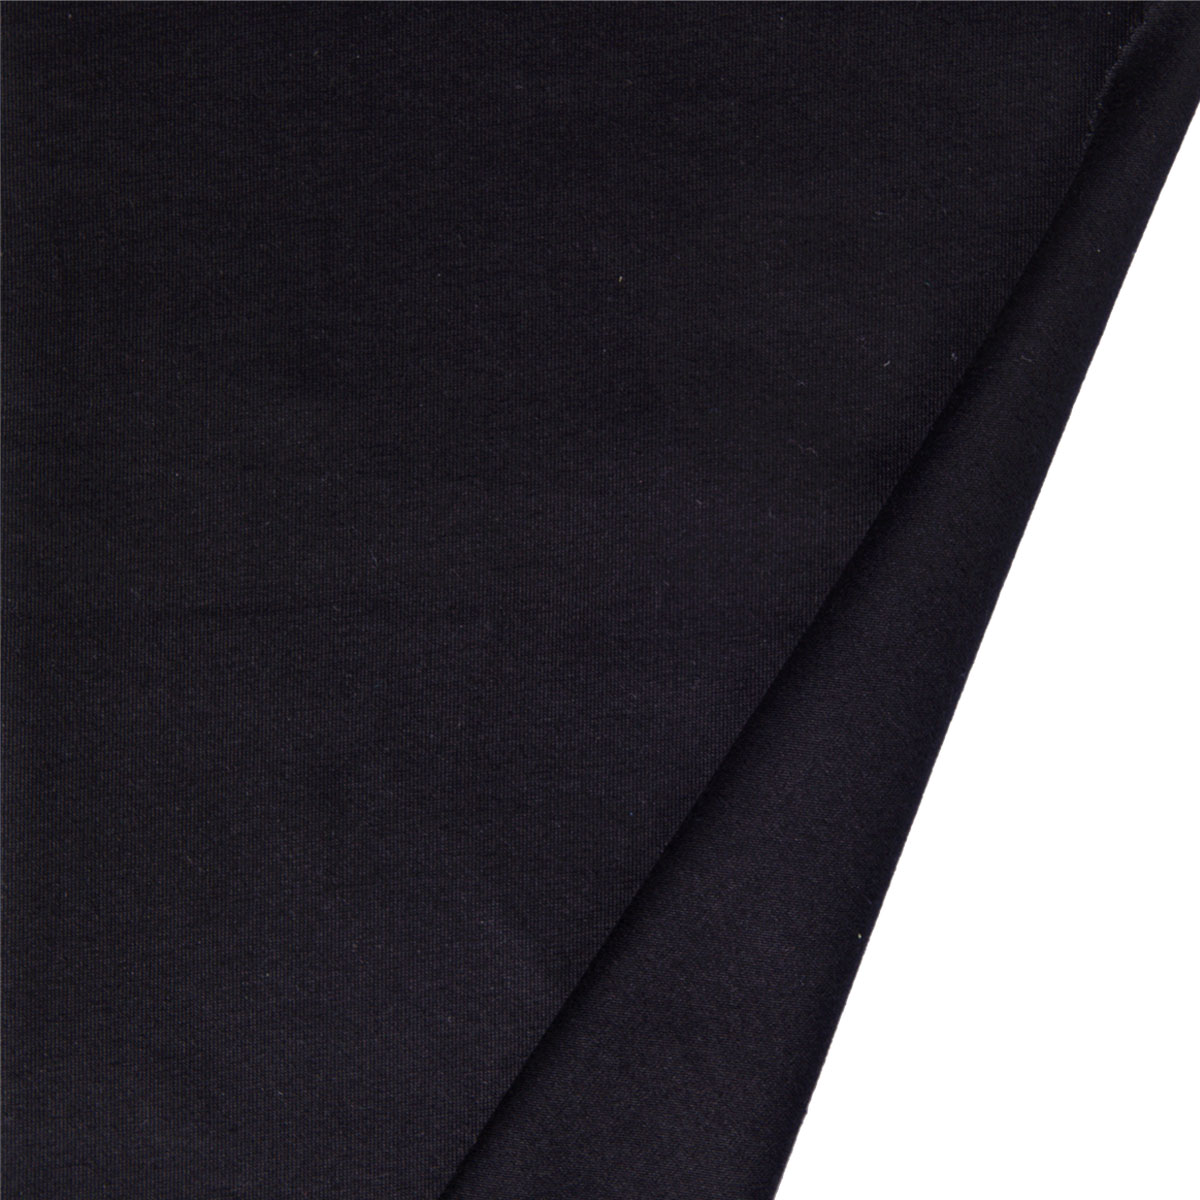 Dekostoff Lilly Uni schwarz in 1,6m Breite (METERWARE) Baumwollstoff Stoff aus 95% Baumwolle